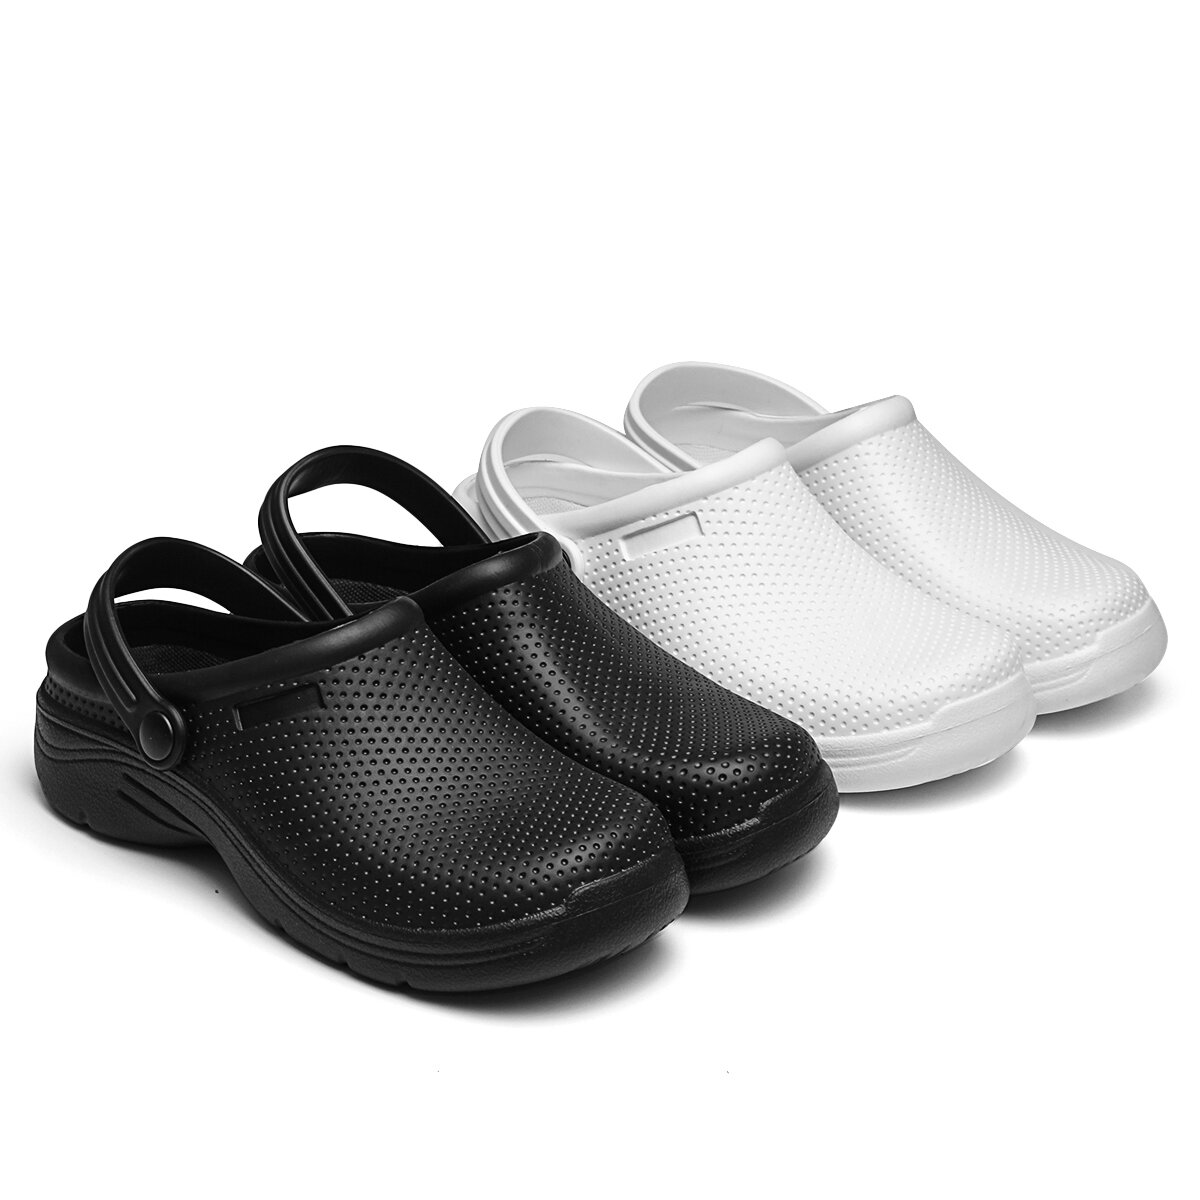 Резиновые сандалии AtreGo EVA летние безопасные ботинки водонепроницаемые, с антискользящей подошвой для женщин и мужчин на открытом воздухе и в помещении.